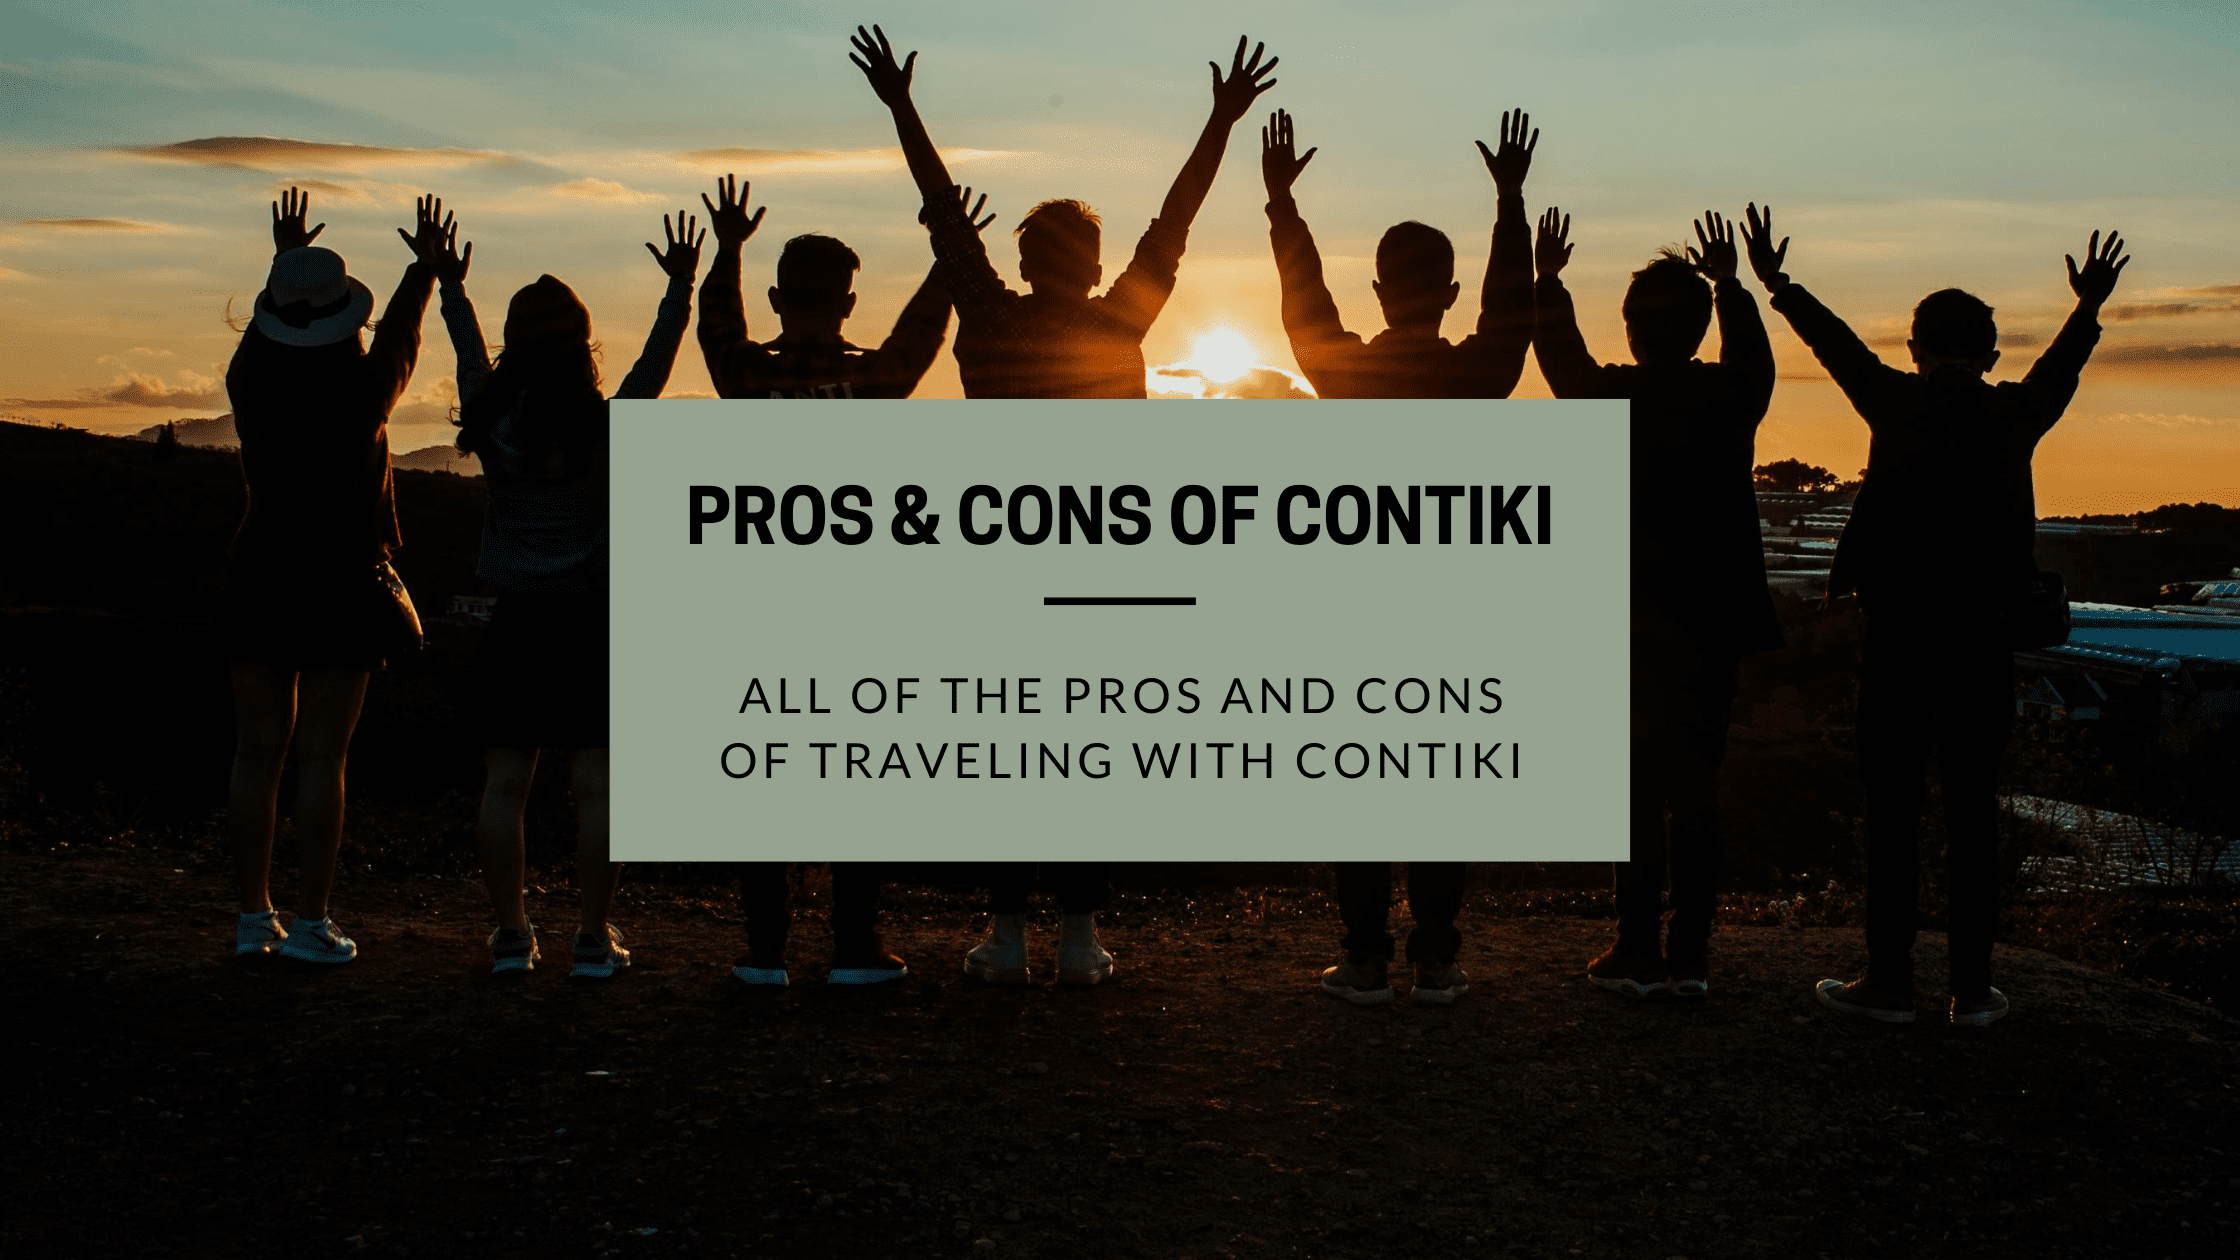 Contiki Pros and Cons